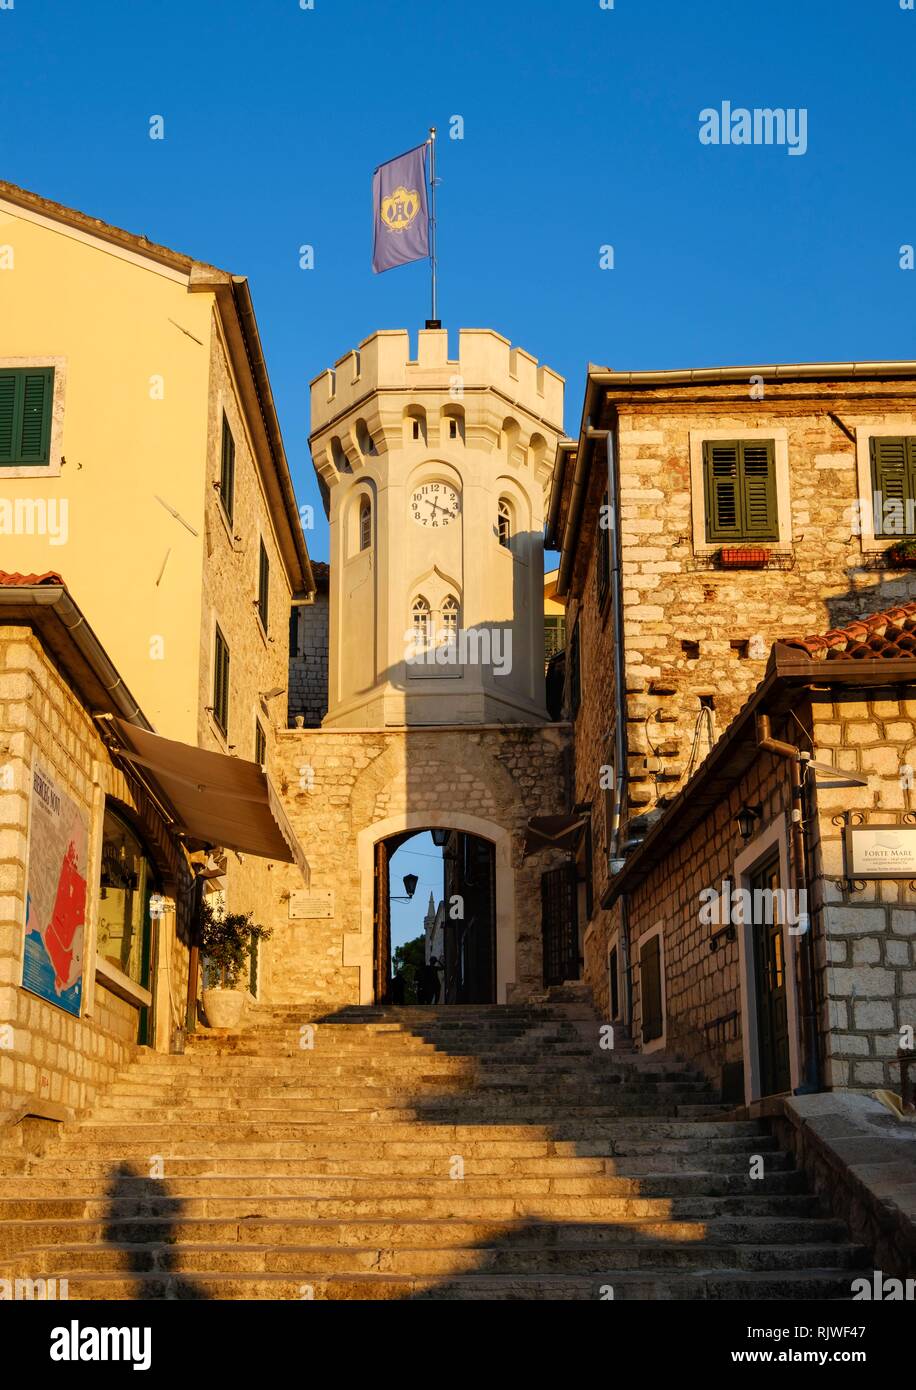 Tour de l'horloge, Vieille Ville, Herceg Novi, dans la baie de Kotor, Monténégro Banque D'Images